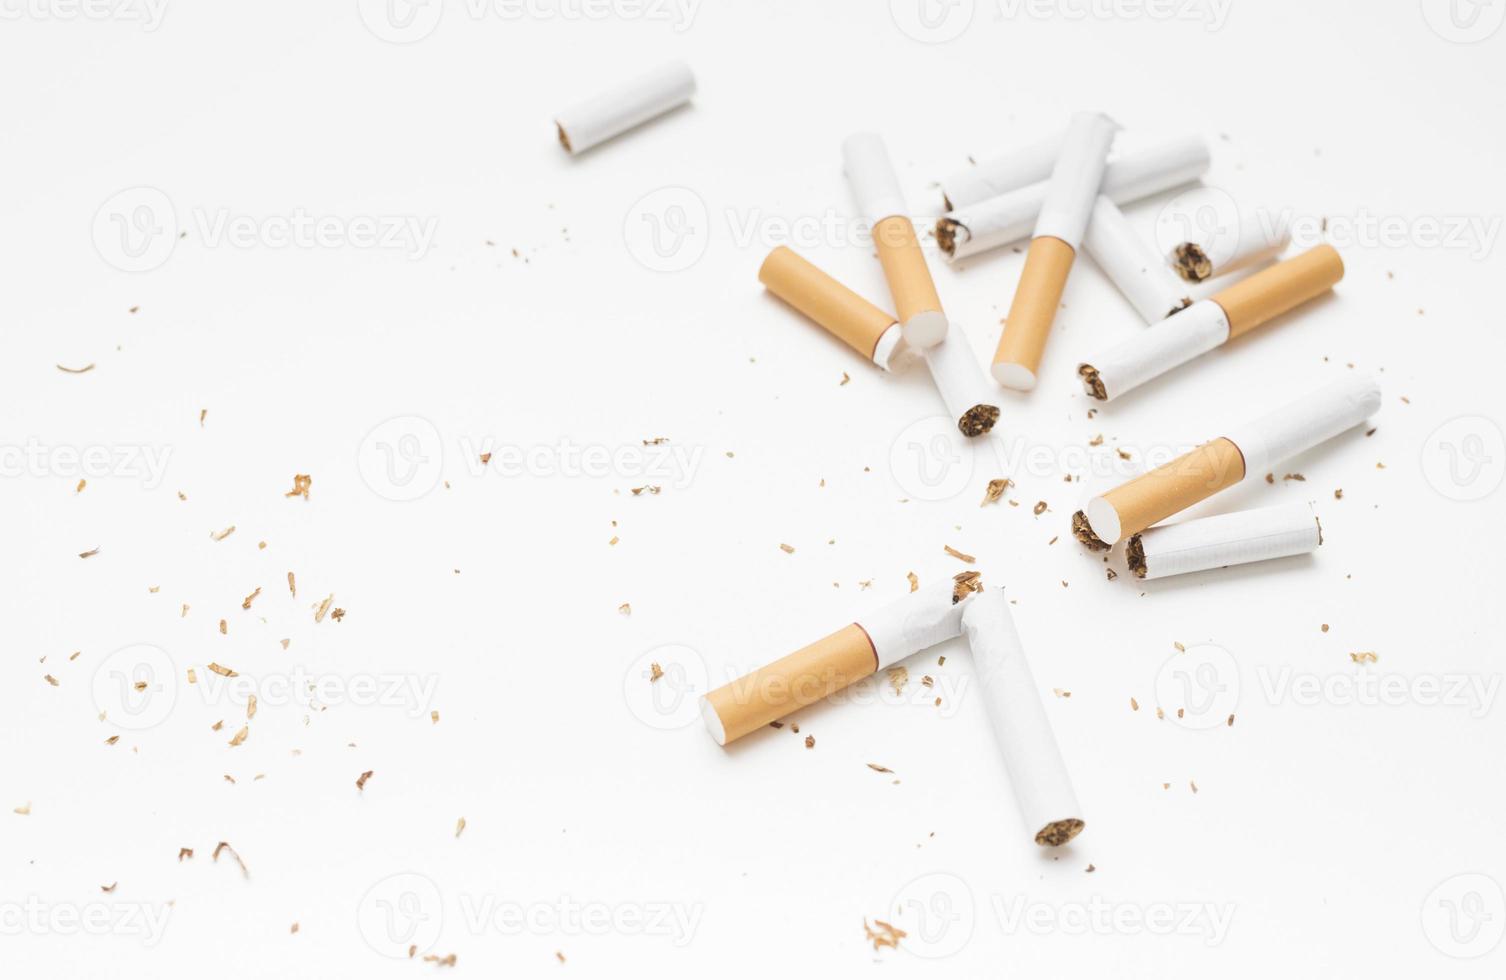 vista dall'alto tabacco da sigaretta rotto su sfondo bianco foto